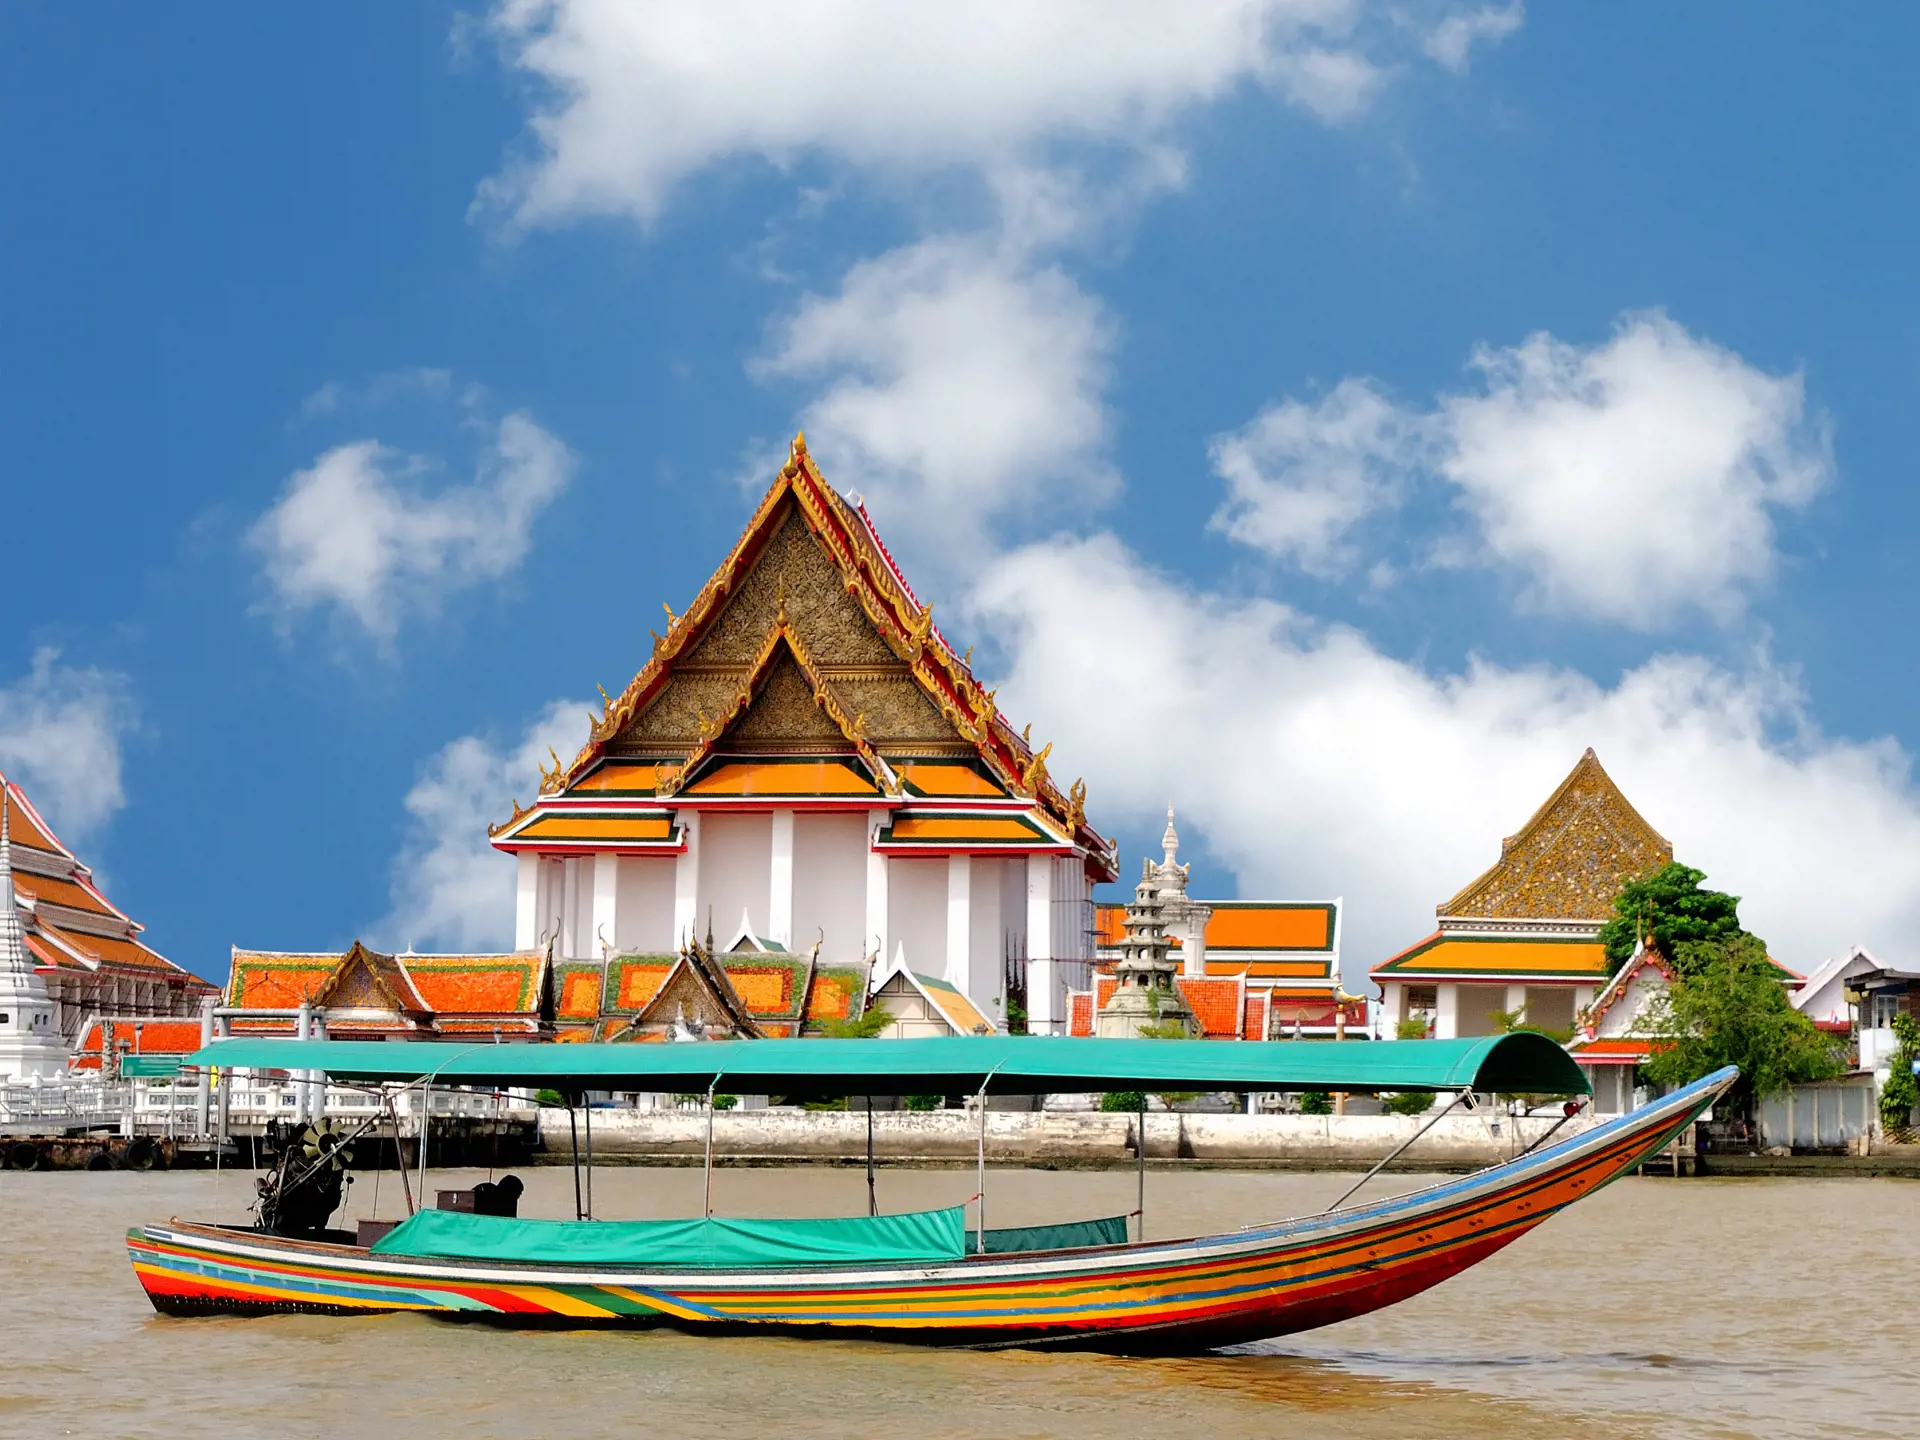 Thailand Bangkok Boat On The River Chao Phraya 58663423